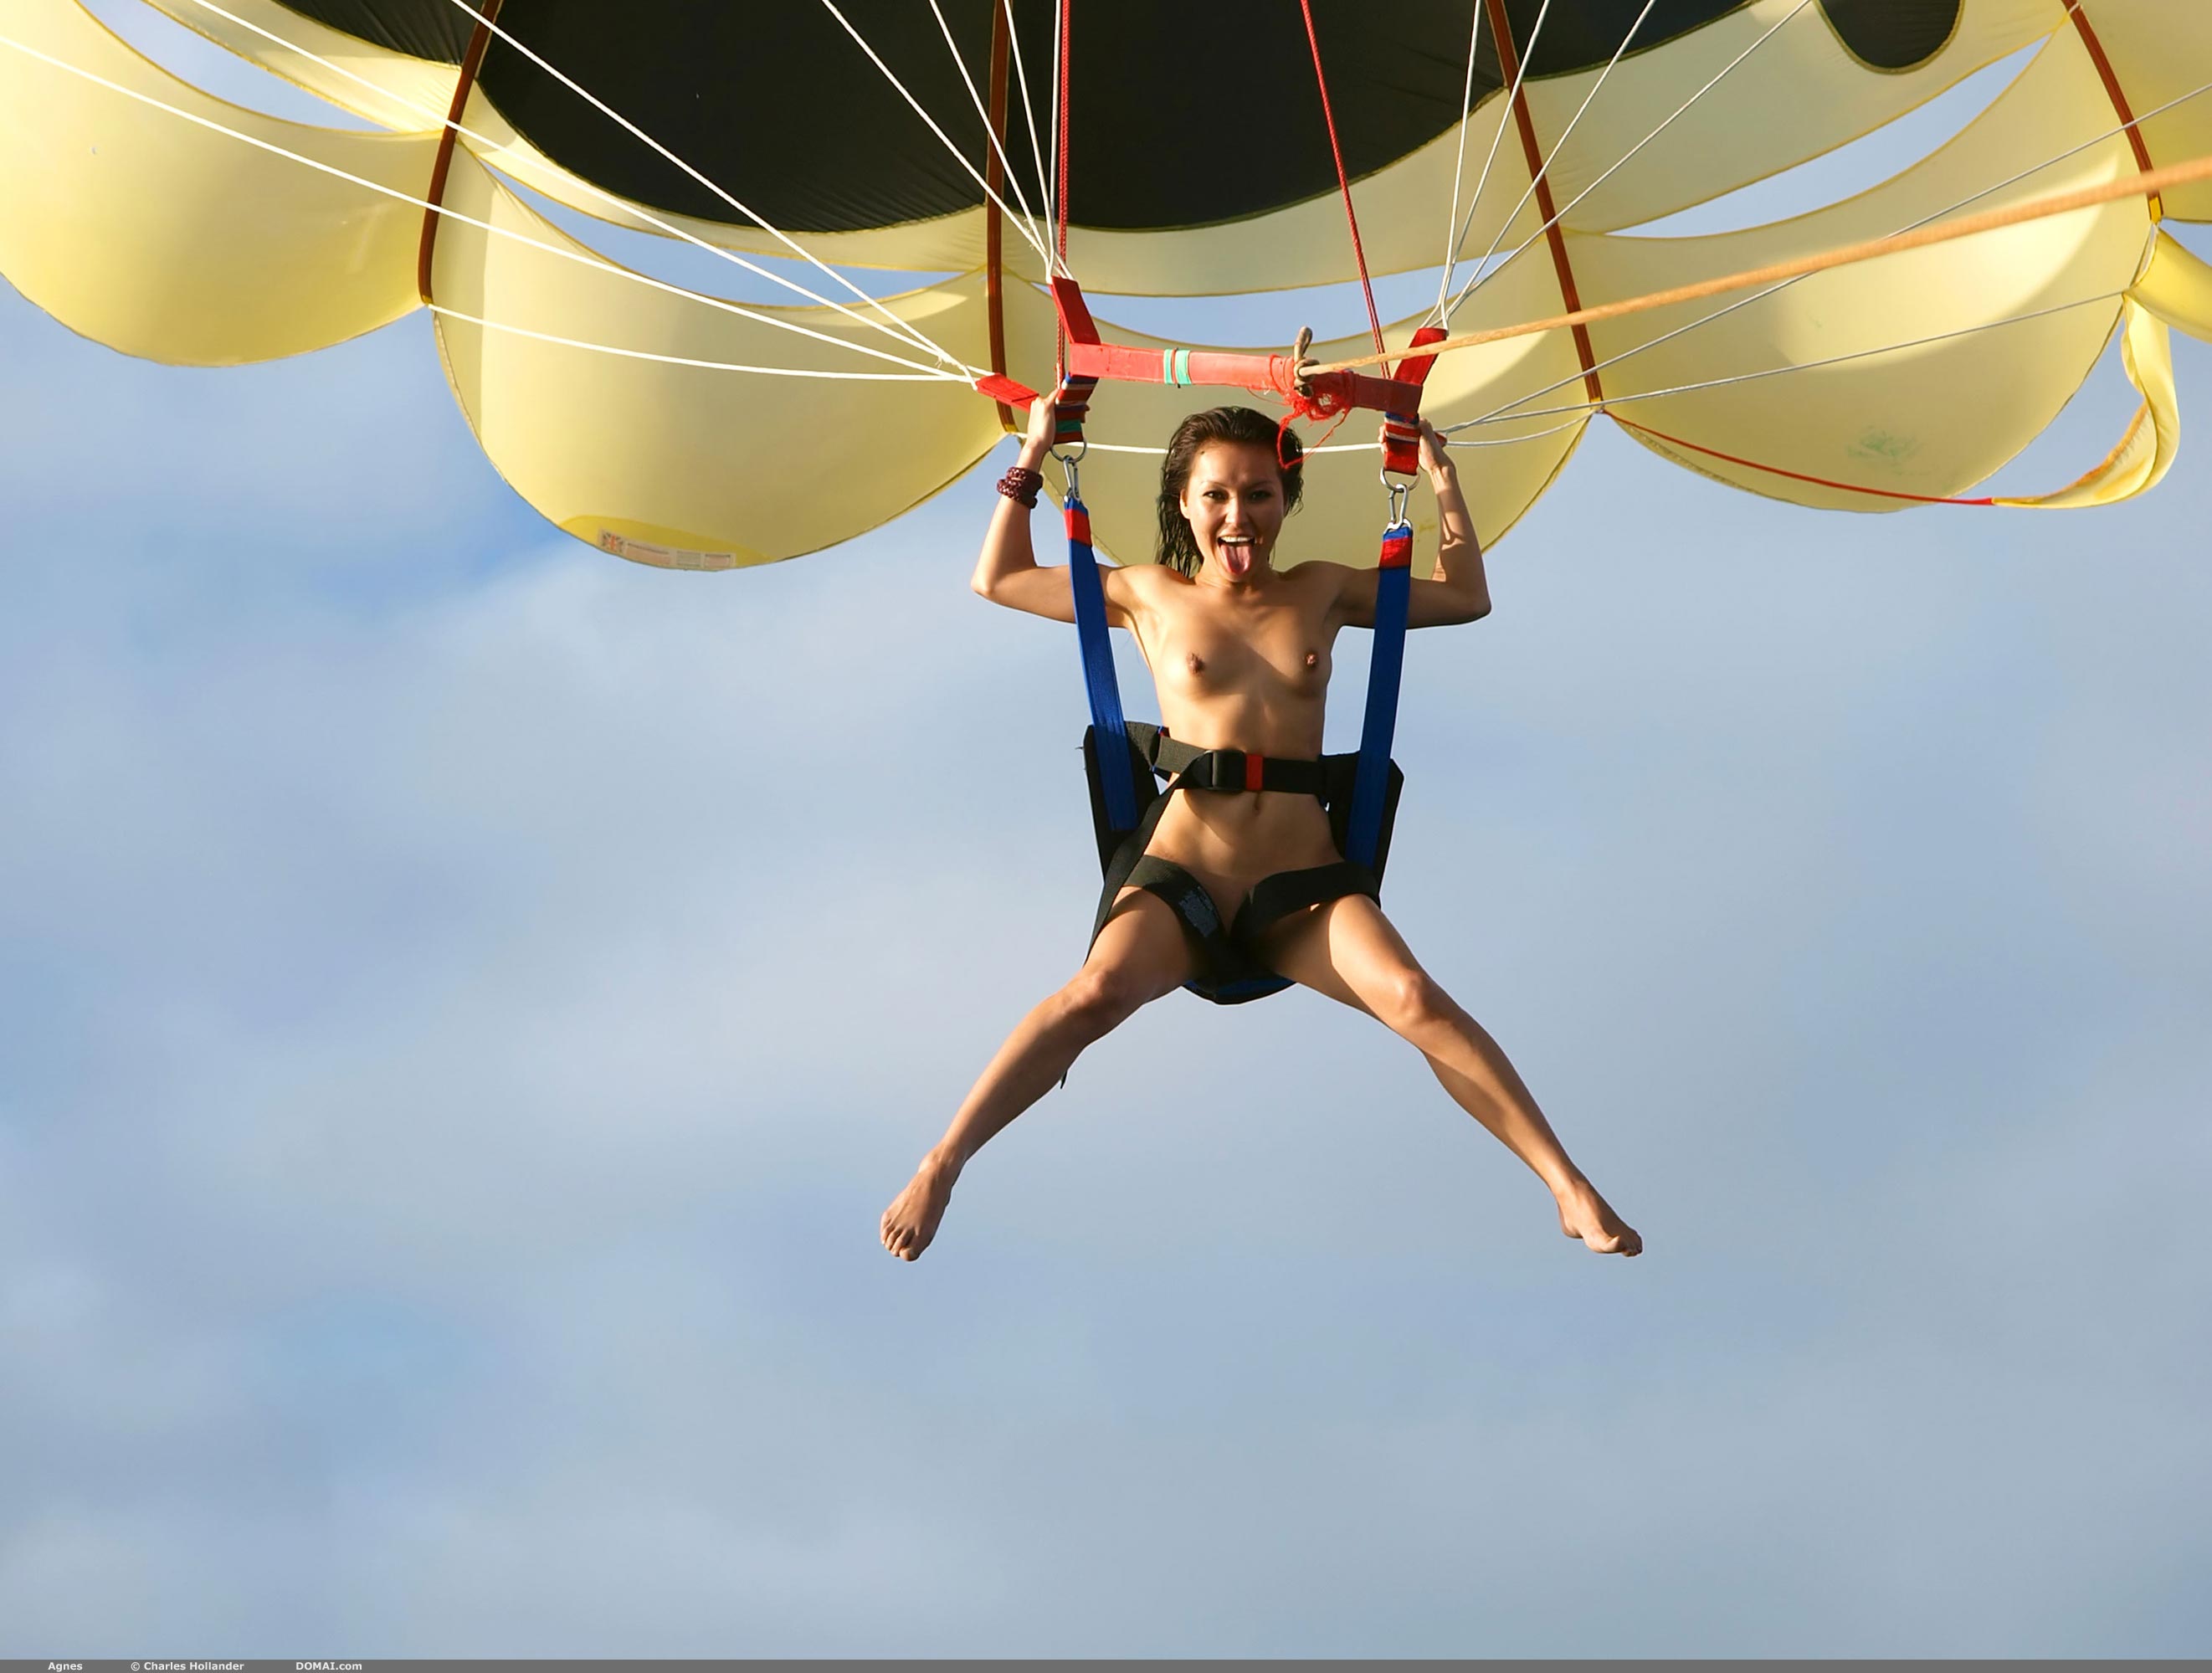 В США супруги решились на интим во время прыжка с парашутом - фото - Апостроф